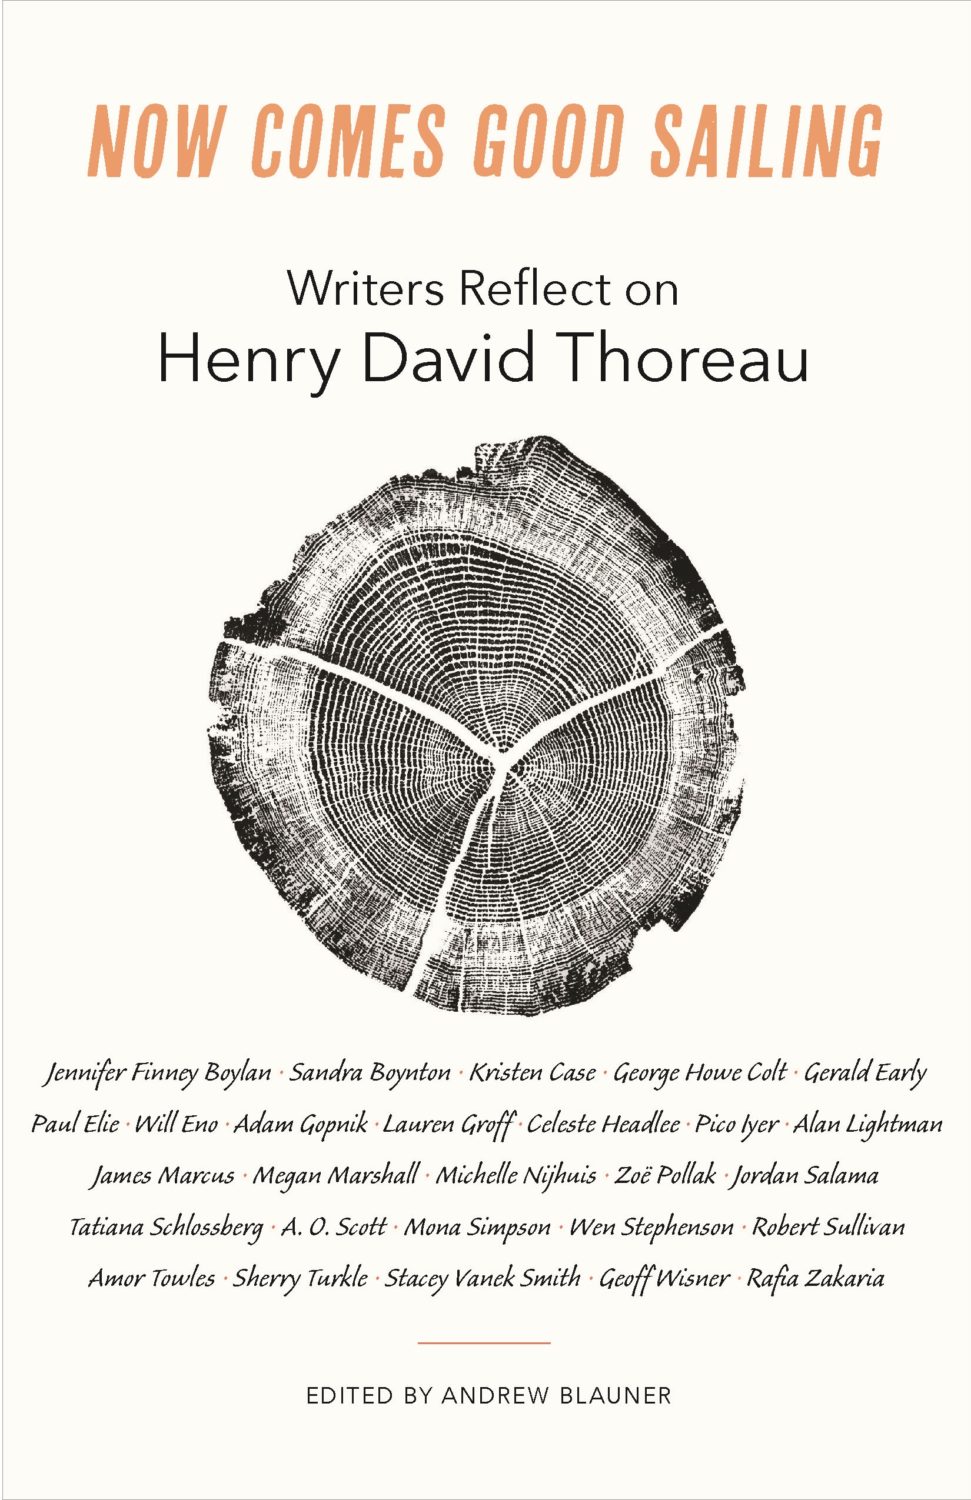 Writers Reflect on Henry David Thoreau